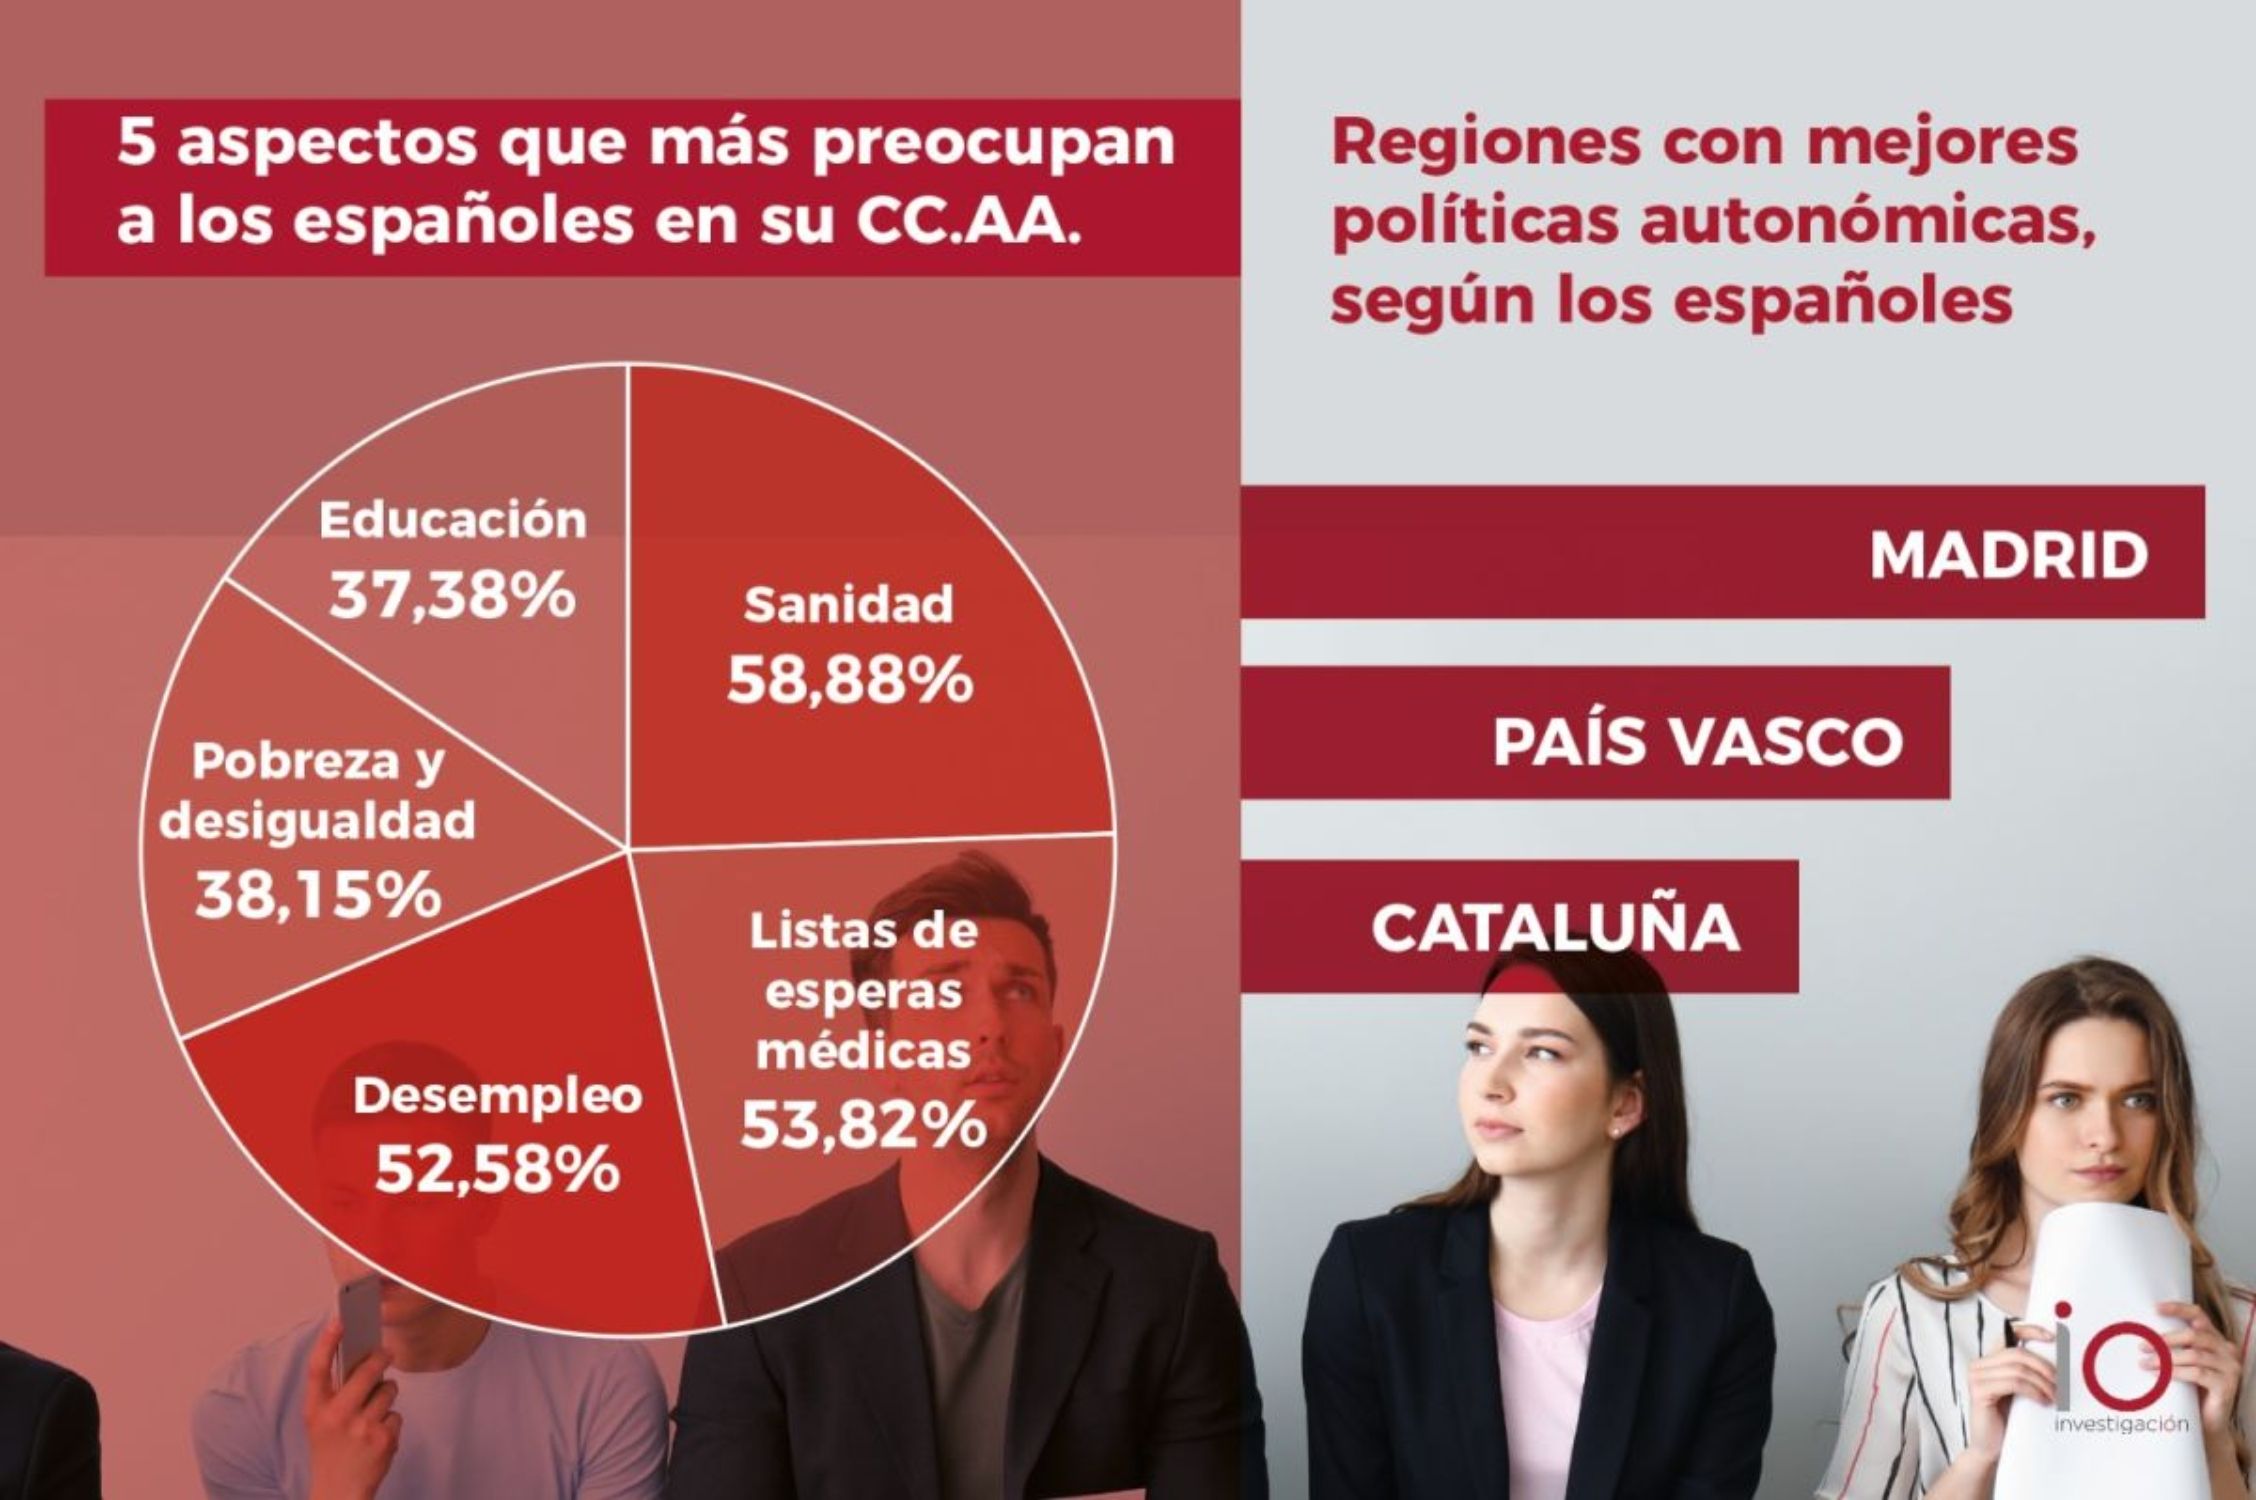 Madrid y País Vasco, las dos regiones con las mejores políticas autonómicas